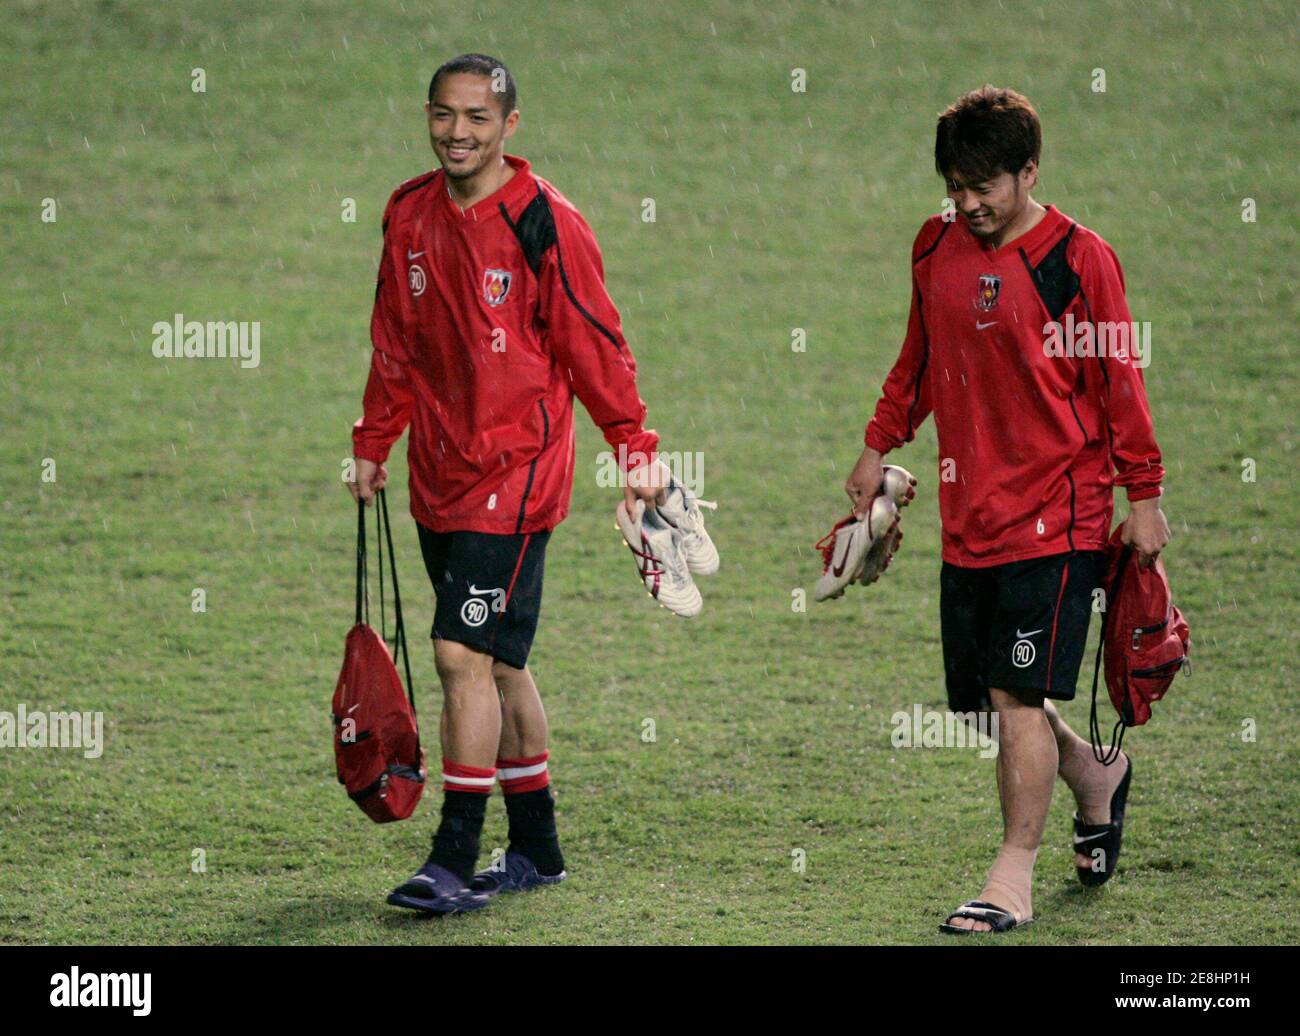 Shinji Ono (L) y la compañera de equipo Nobuhisa Yamada de los diamantes rojos de Urawa de Japón caminan bajo la lluvia durante el entrenamiento en el estadio de fútbol de Sydney 20 de marzo de 2007. Los diamantes rojos de Urawa jugarán contra el Sydney FC en el partido de fútbol de la Liga de Campeones de la Confederación Asiática de Fútbol (AFC) el 21 de marzo. REUTERS/will Burgess (AUSTRALIA) Foto de stock